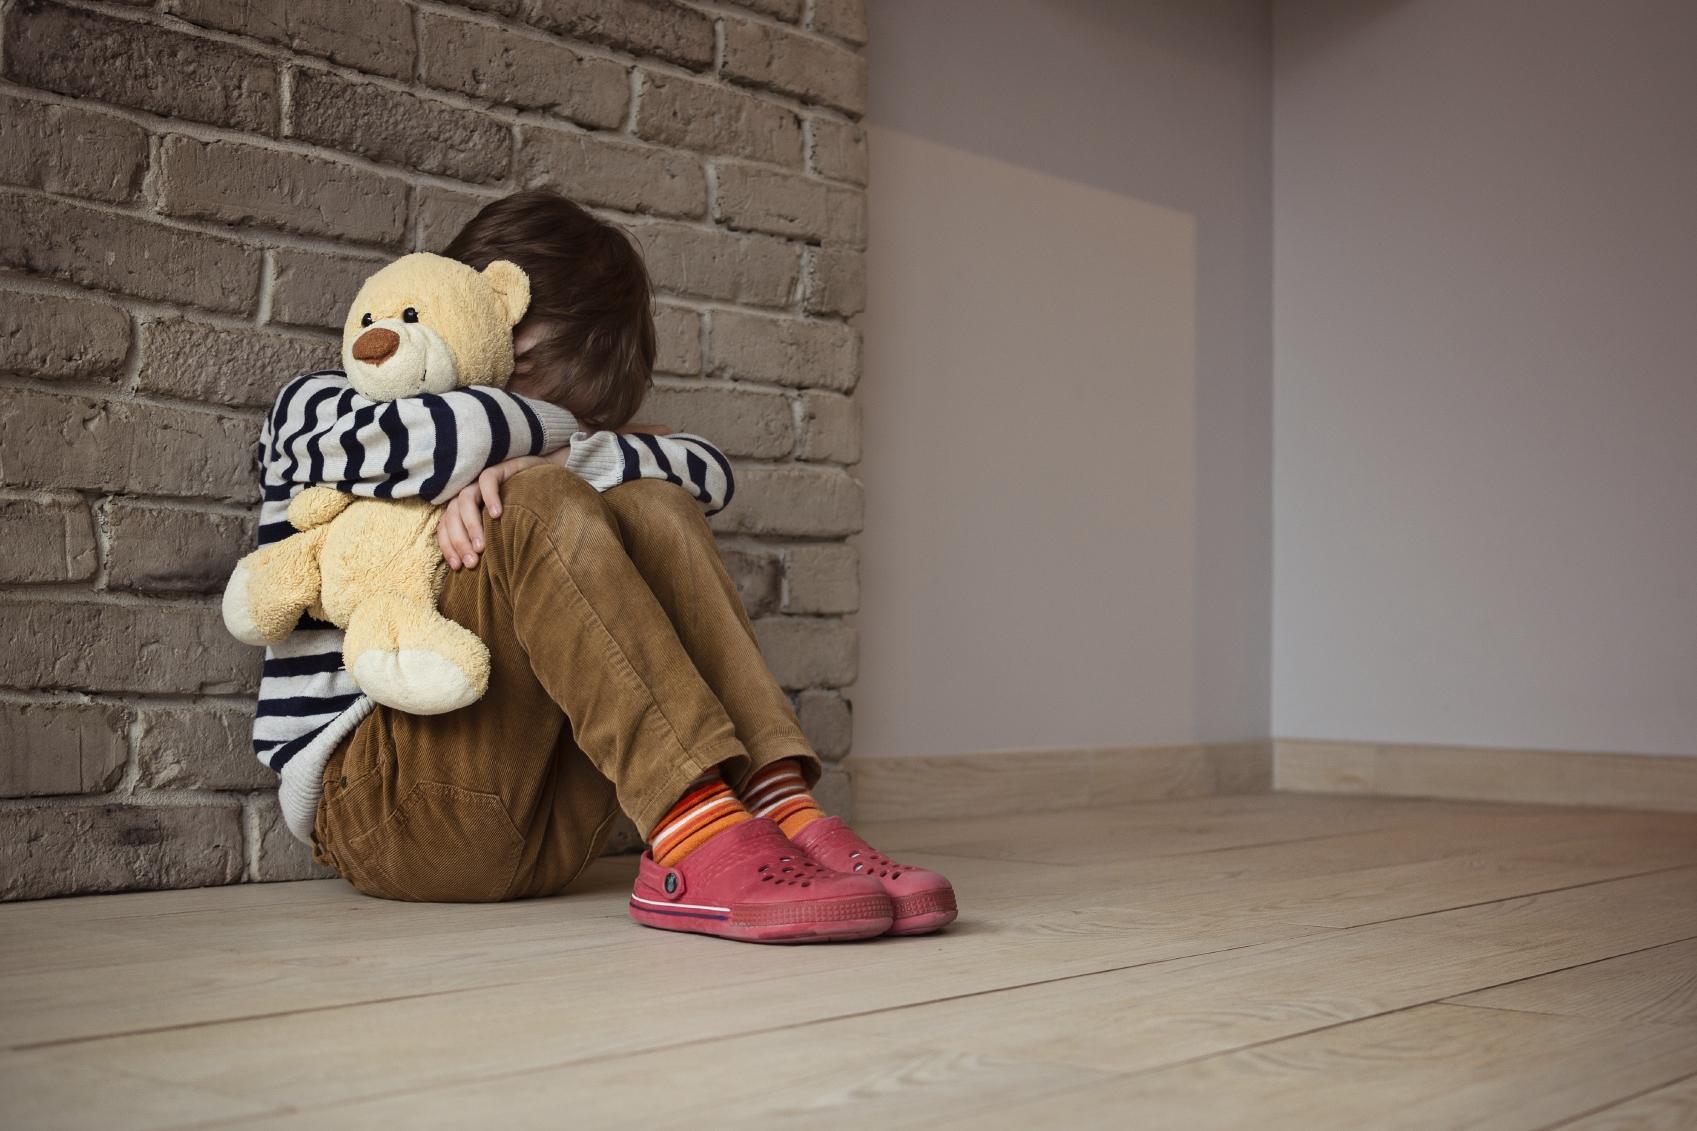 Se pueden prevenir los suicidios detectando los signos de alarma en los niños.